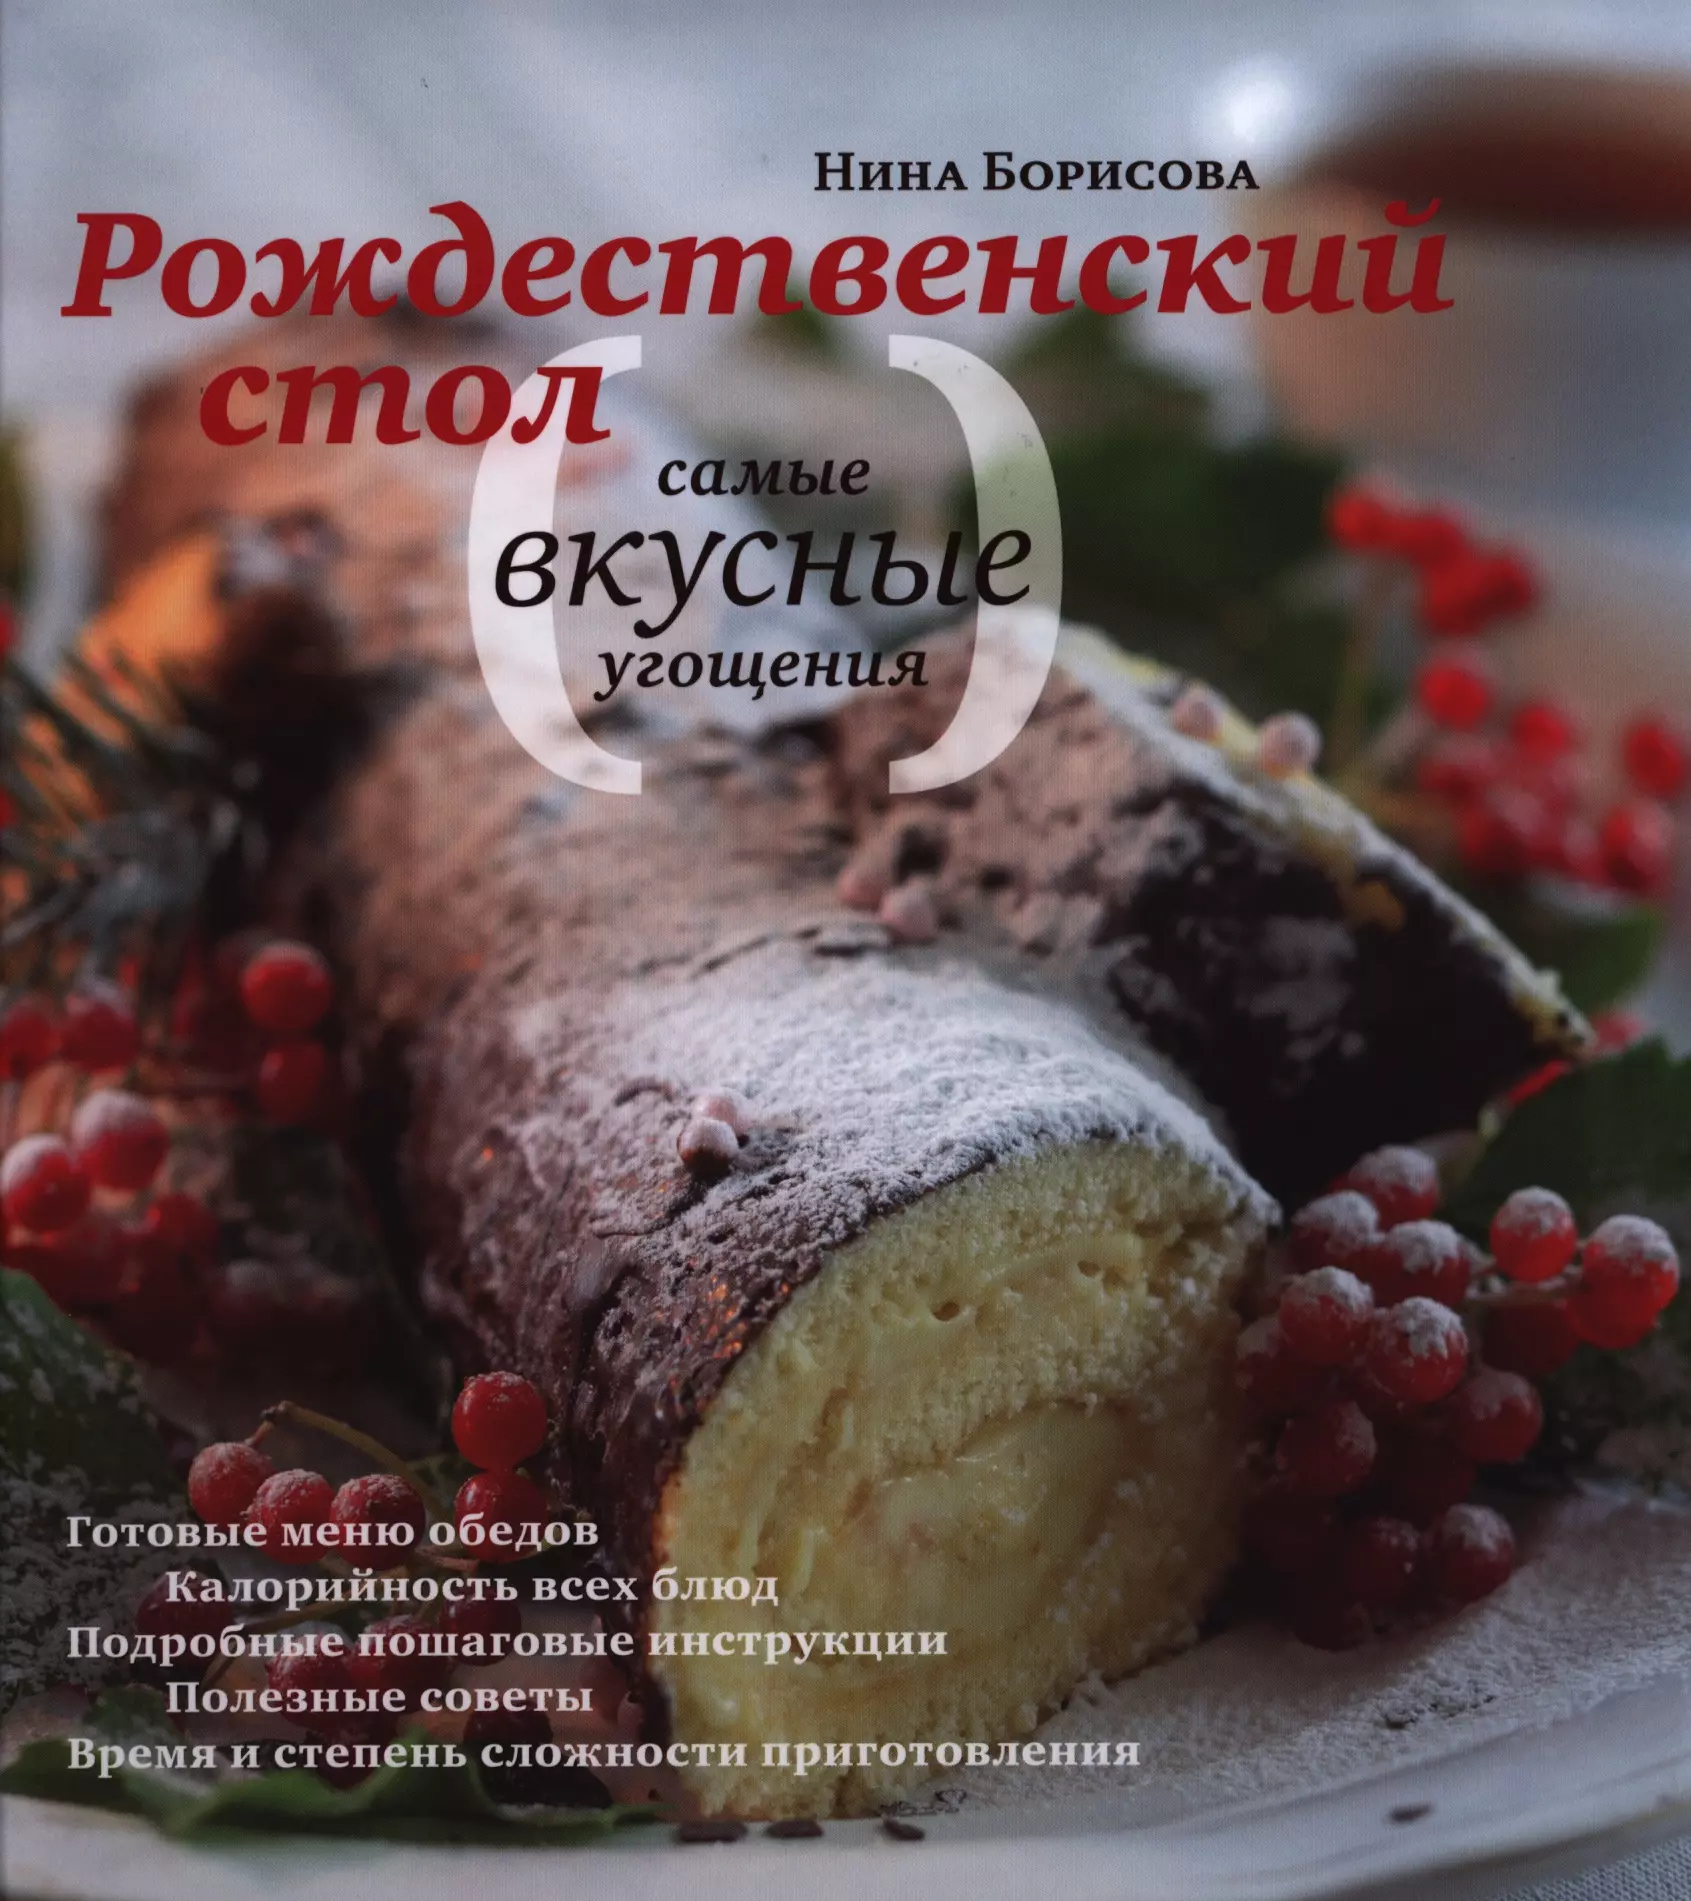 Борисова Нина Ефимовна - Рождественский стол Самые вкусные угощения (Борисова)